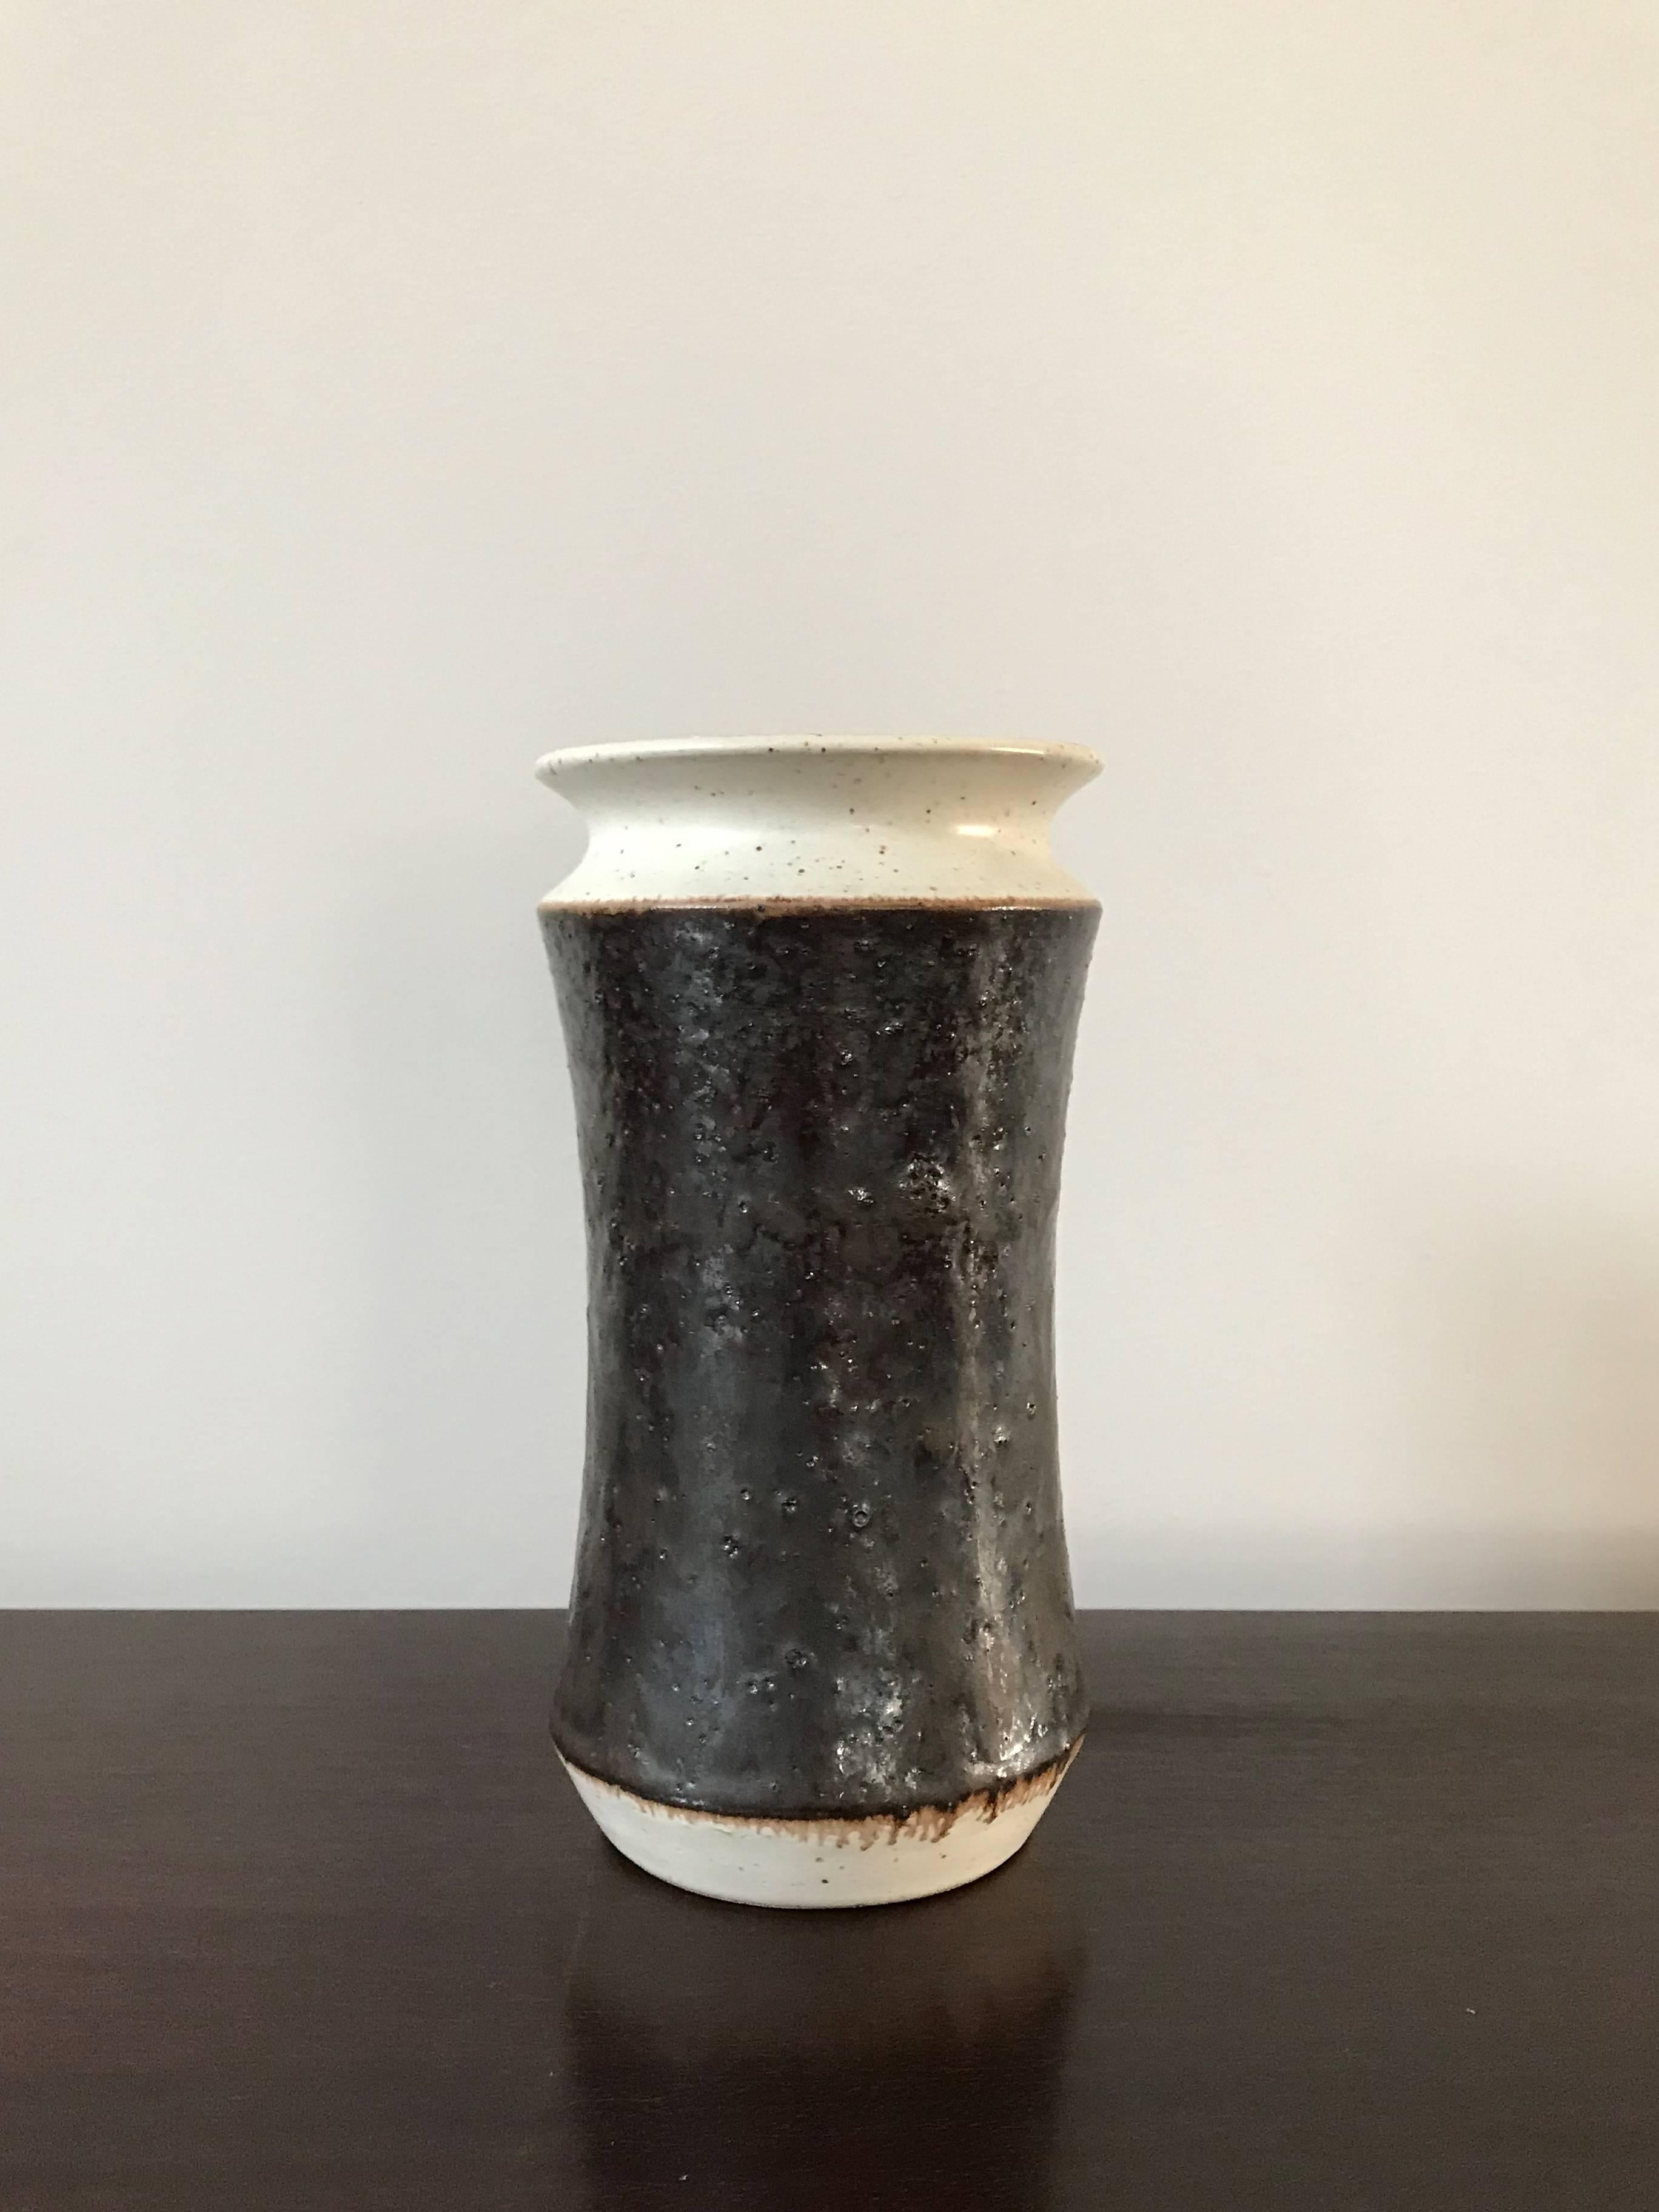 Italian ceramic vase designed by Bruno Gambone, marked on the bottom Gambone Italy, circa 1970s.